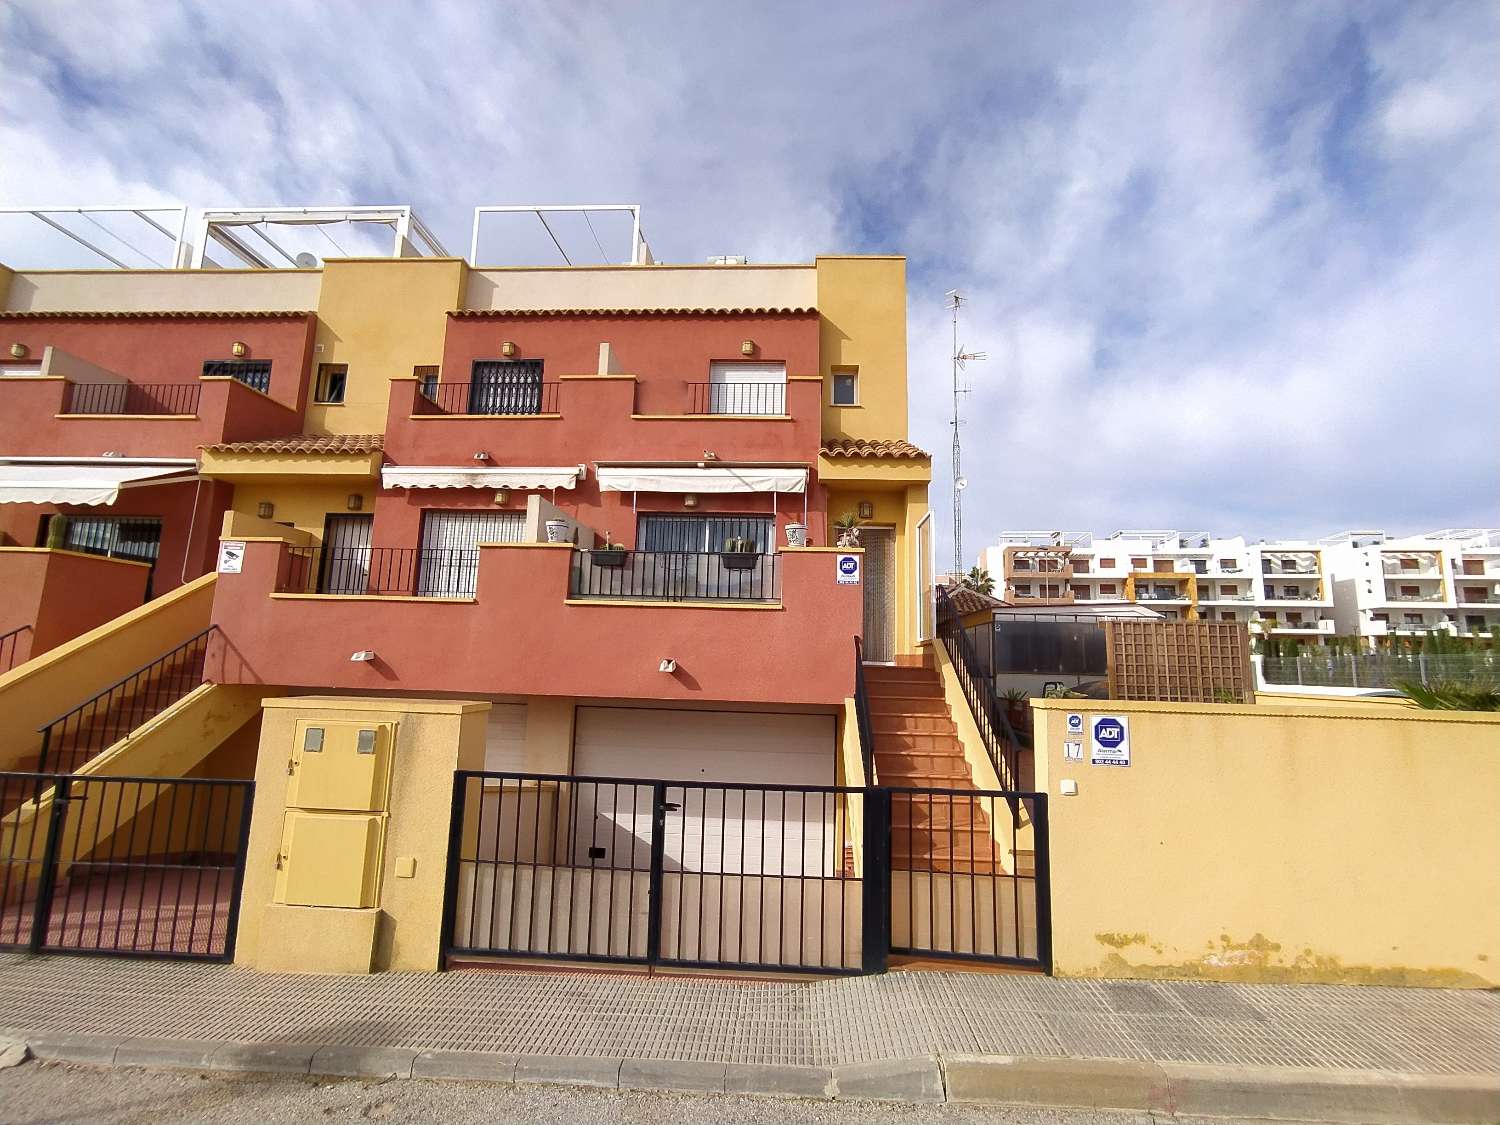 Casa Adosada Moderna y espaciosa en esquina con 3 dormitorios , vistas al mar y un gran garaje